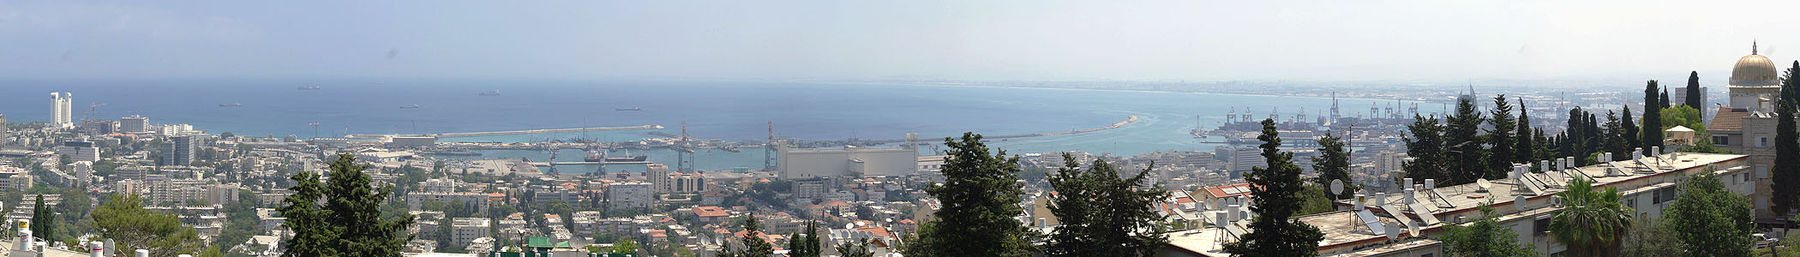 Haifa Banner2.jpg